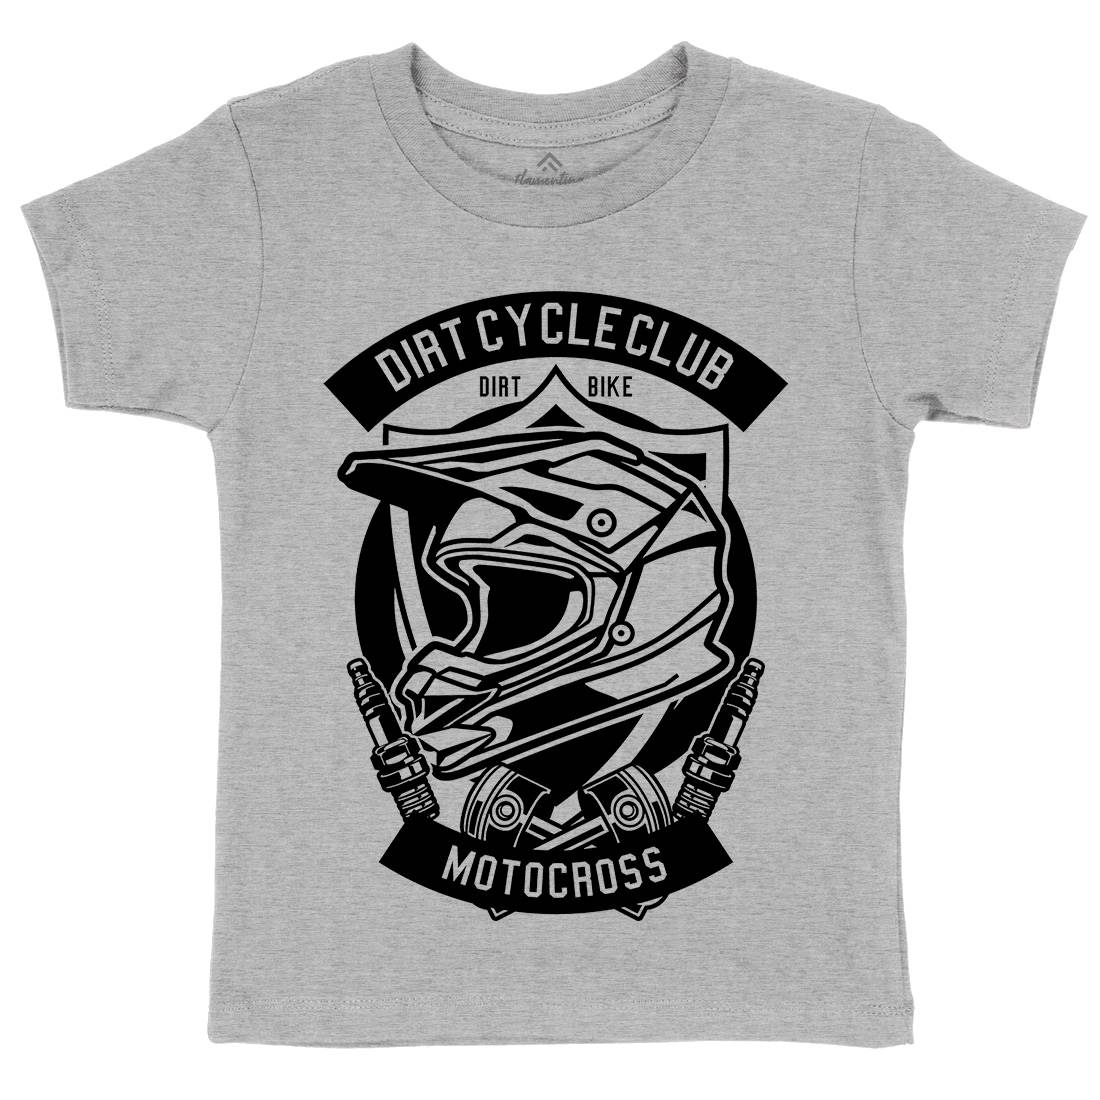 Dirty Cycle Club Kids Organic Crew Neck T-Shirt Motorcycles B532